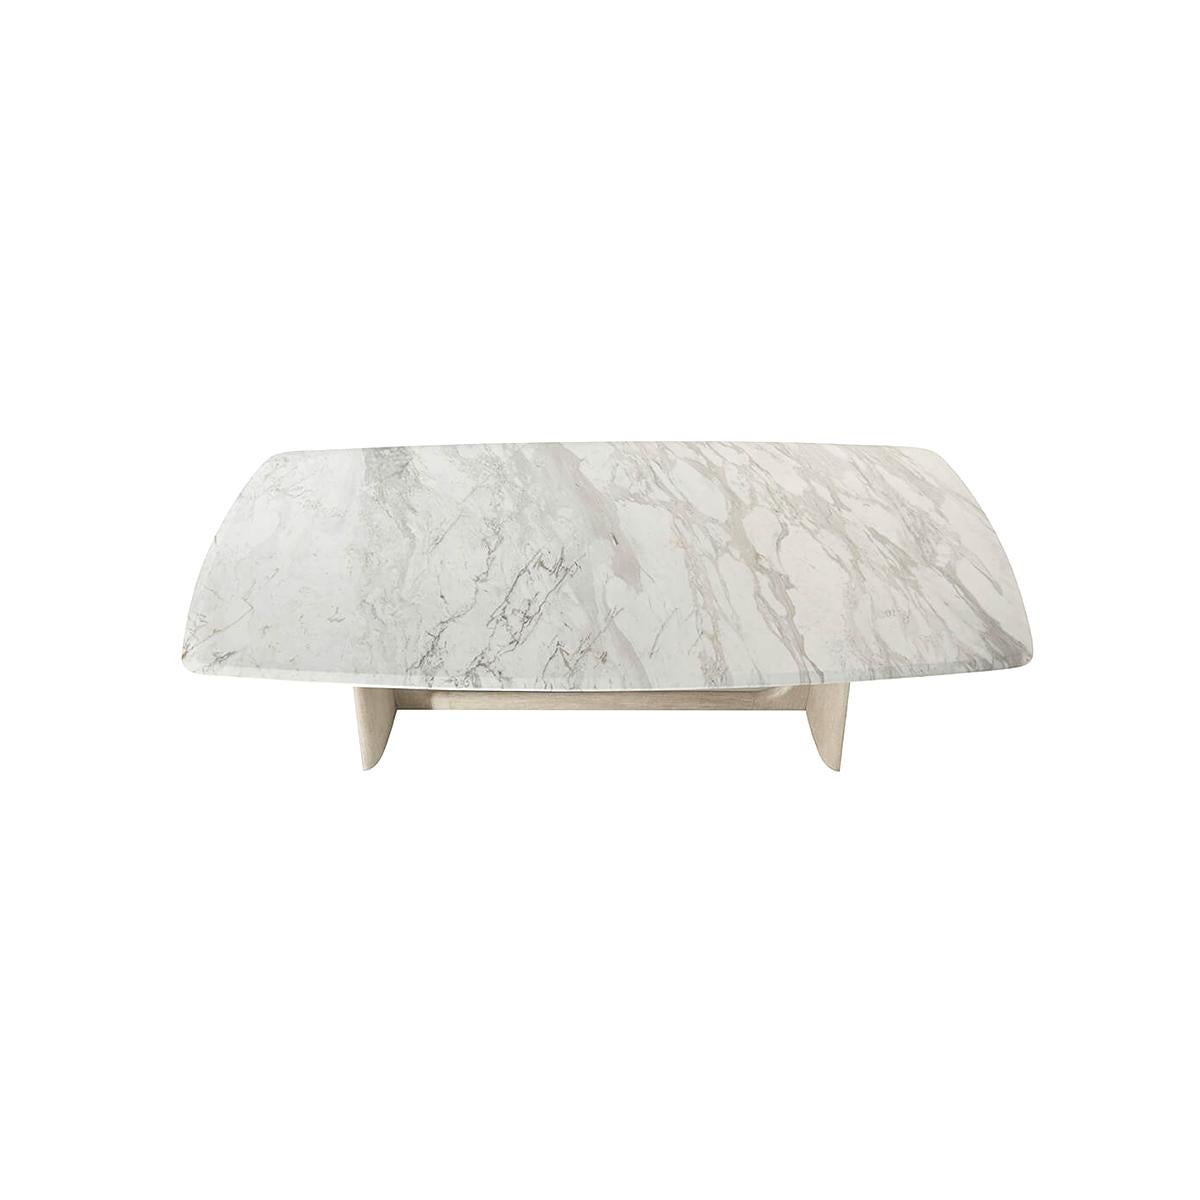 Cette table de salle à manger rectangulaire est ornée d'un magnifique marbre Volakas Arescato et d'un placage de chêne coupé en quart à la main pour la base de style tréteau.  

Dimensions : 102.25